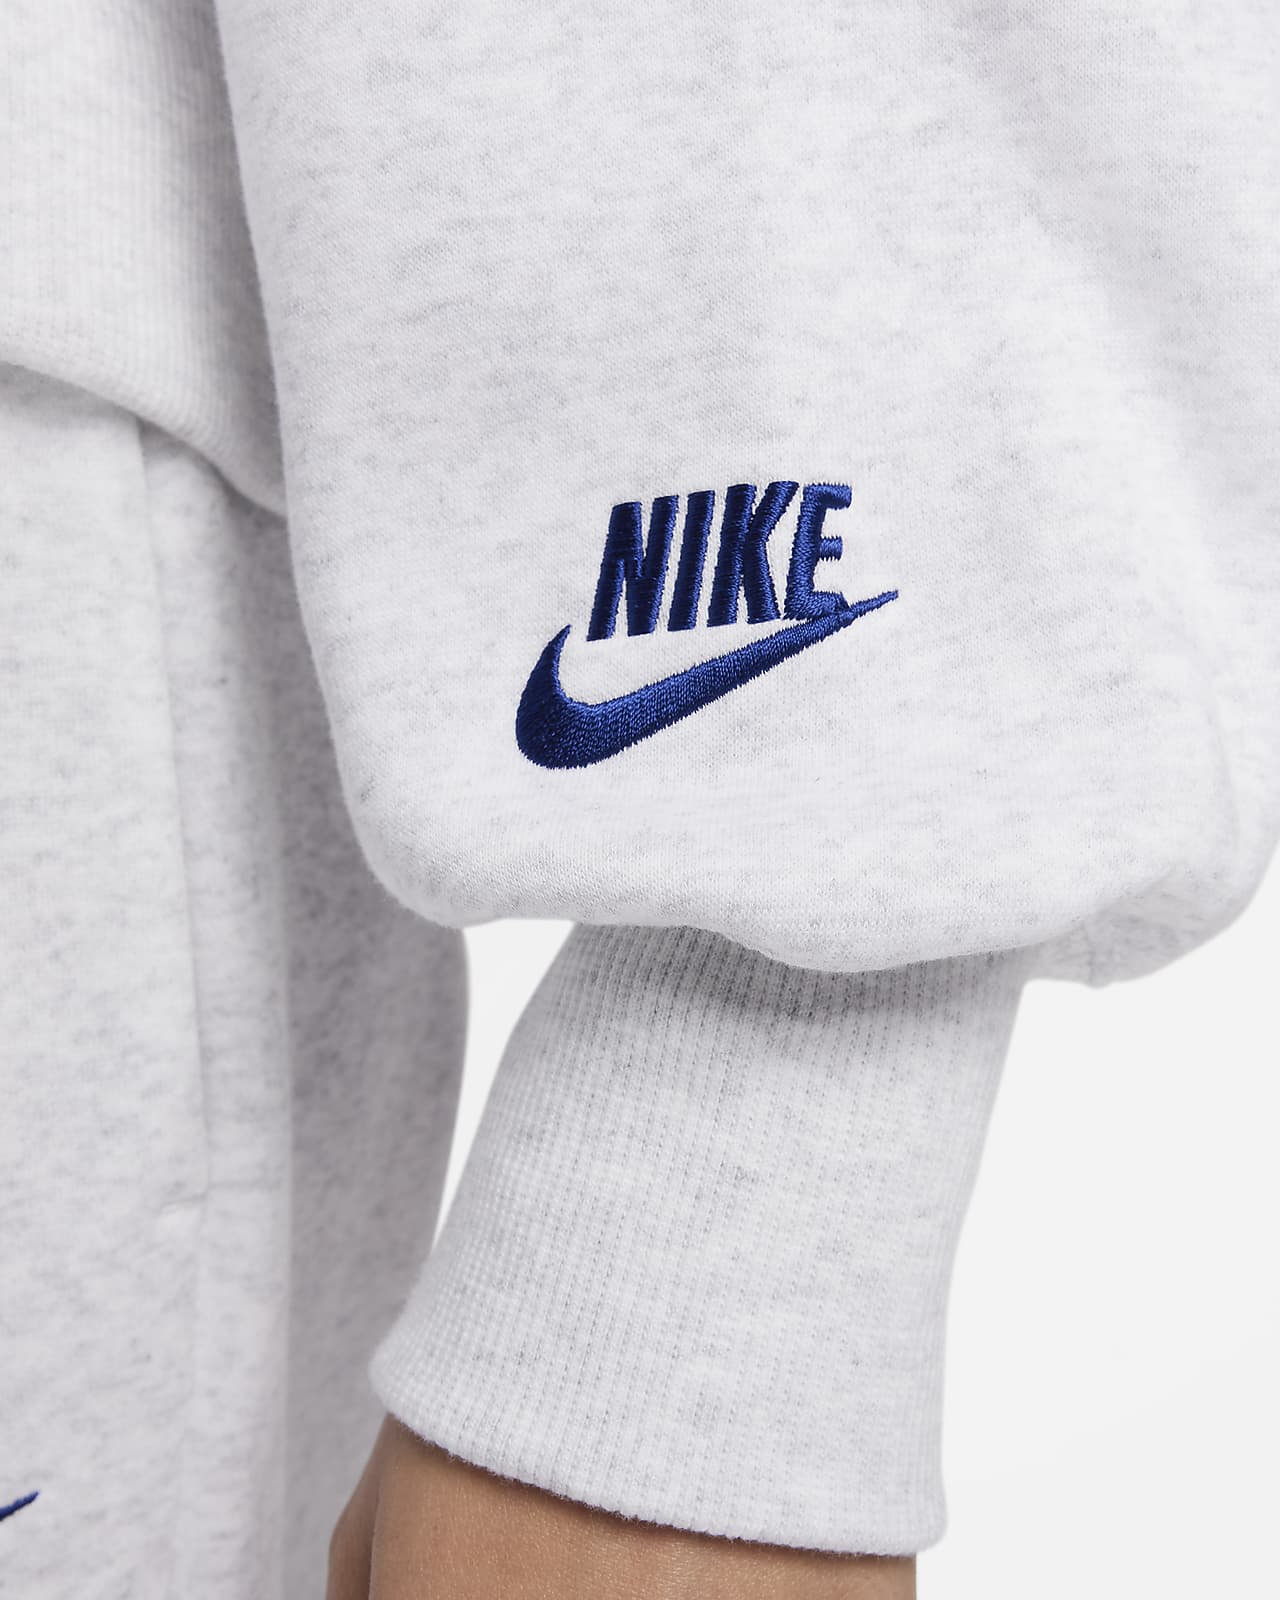 Size XS Nike Sportswear Club Women's Fleece Crew Retail for sale online